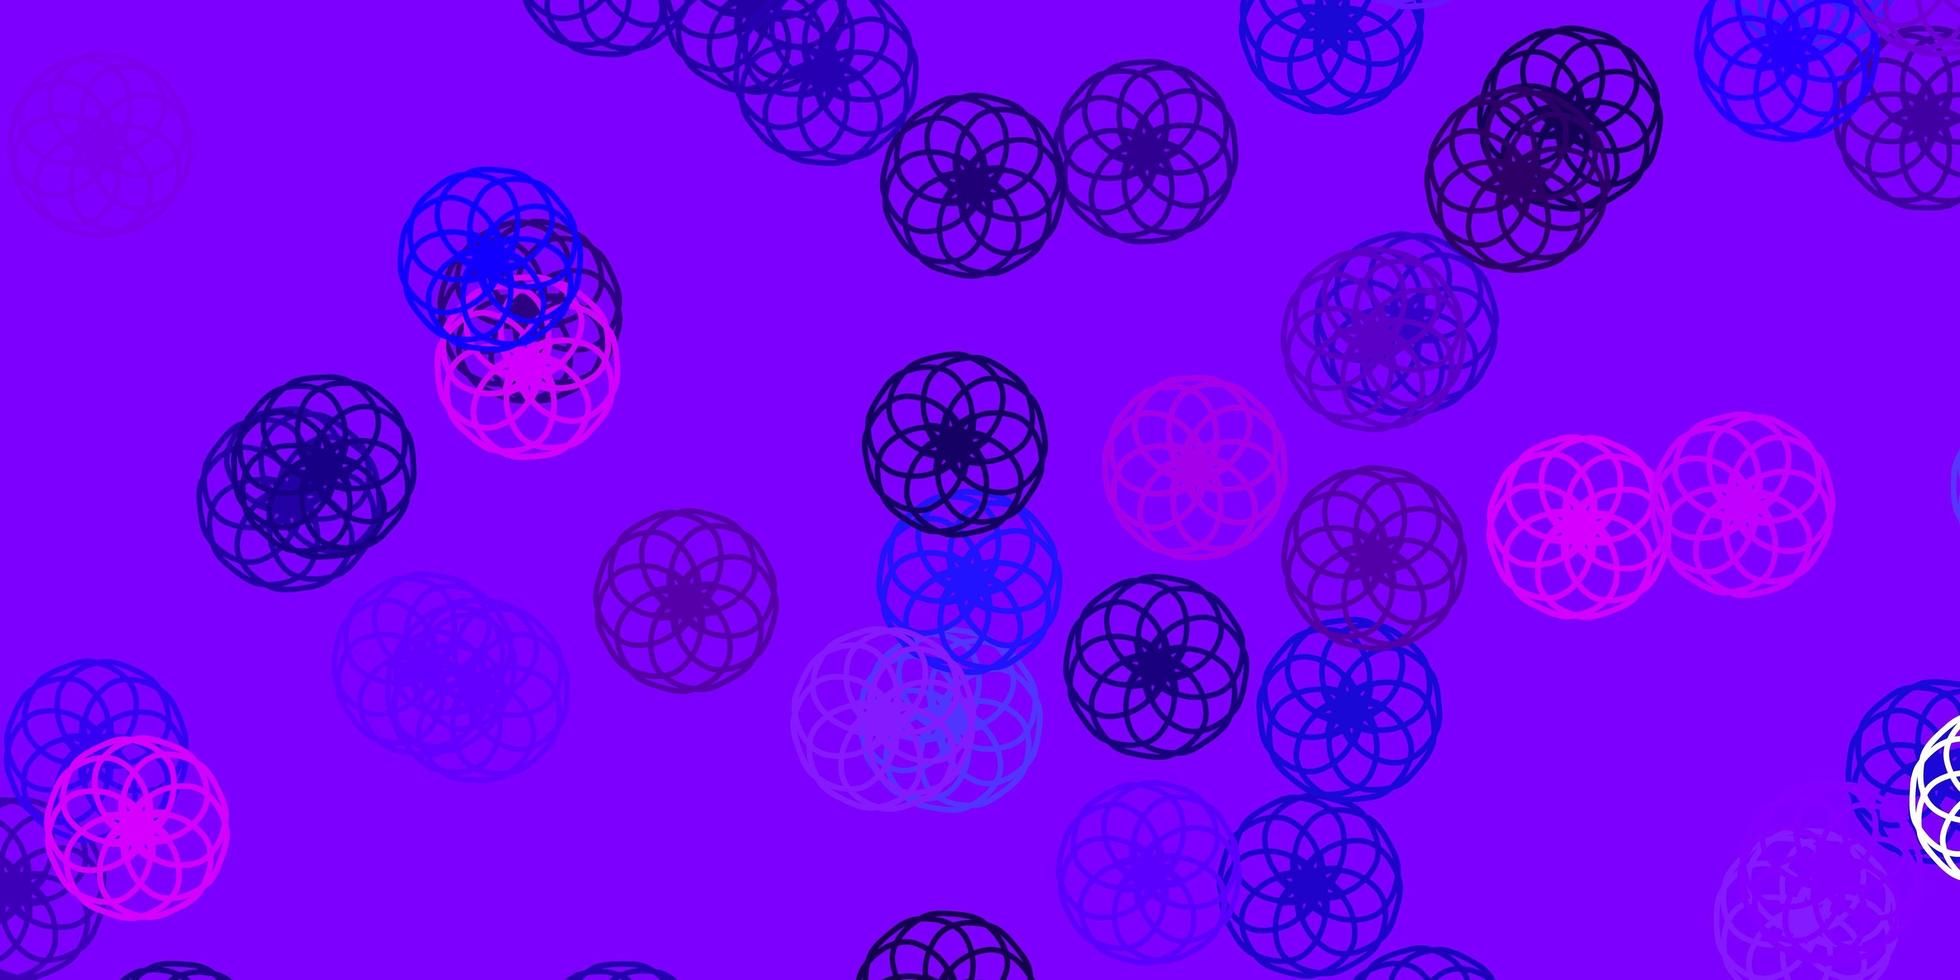 fond de vecteur violet clair, rose avec des bulles.